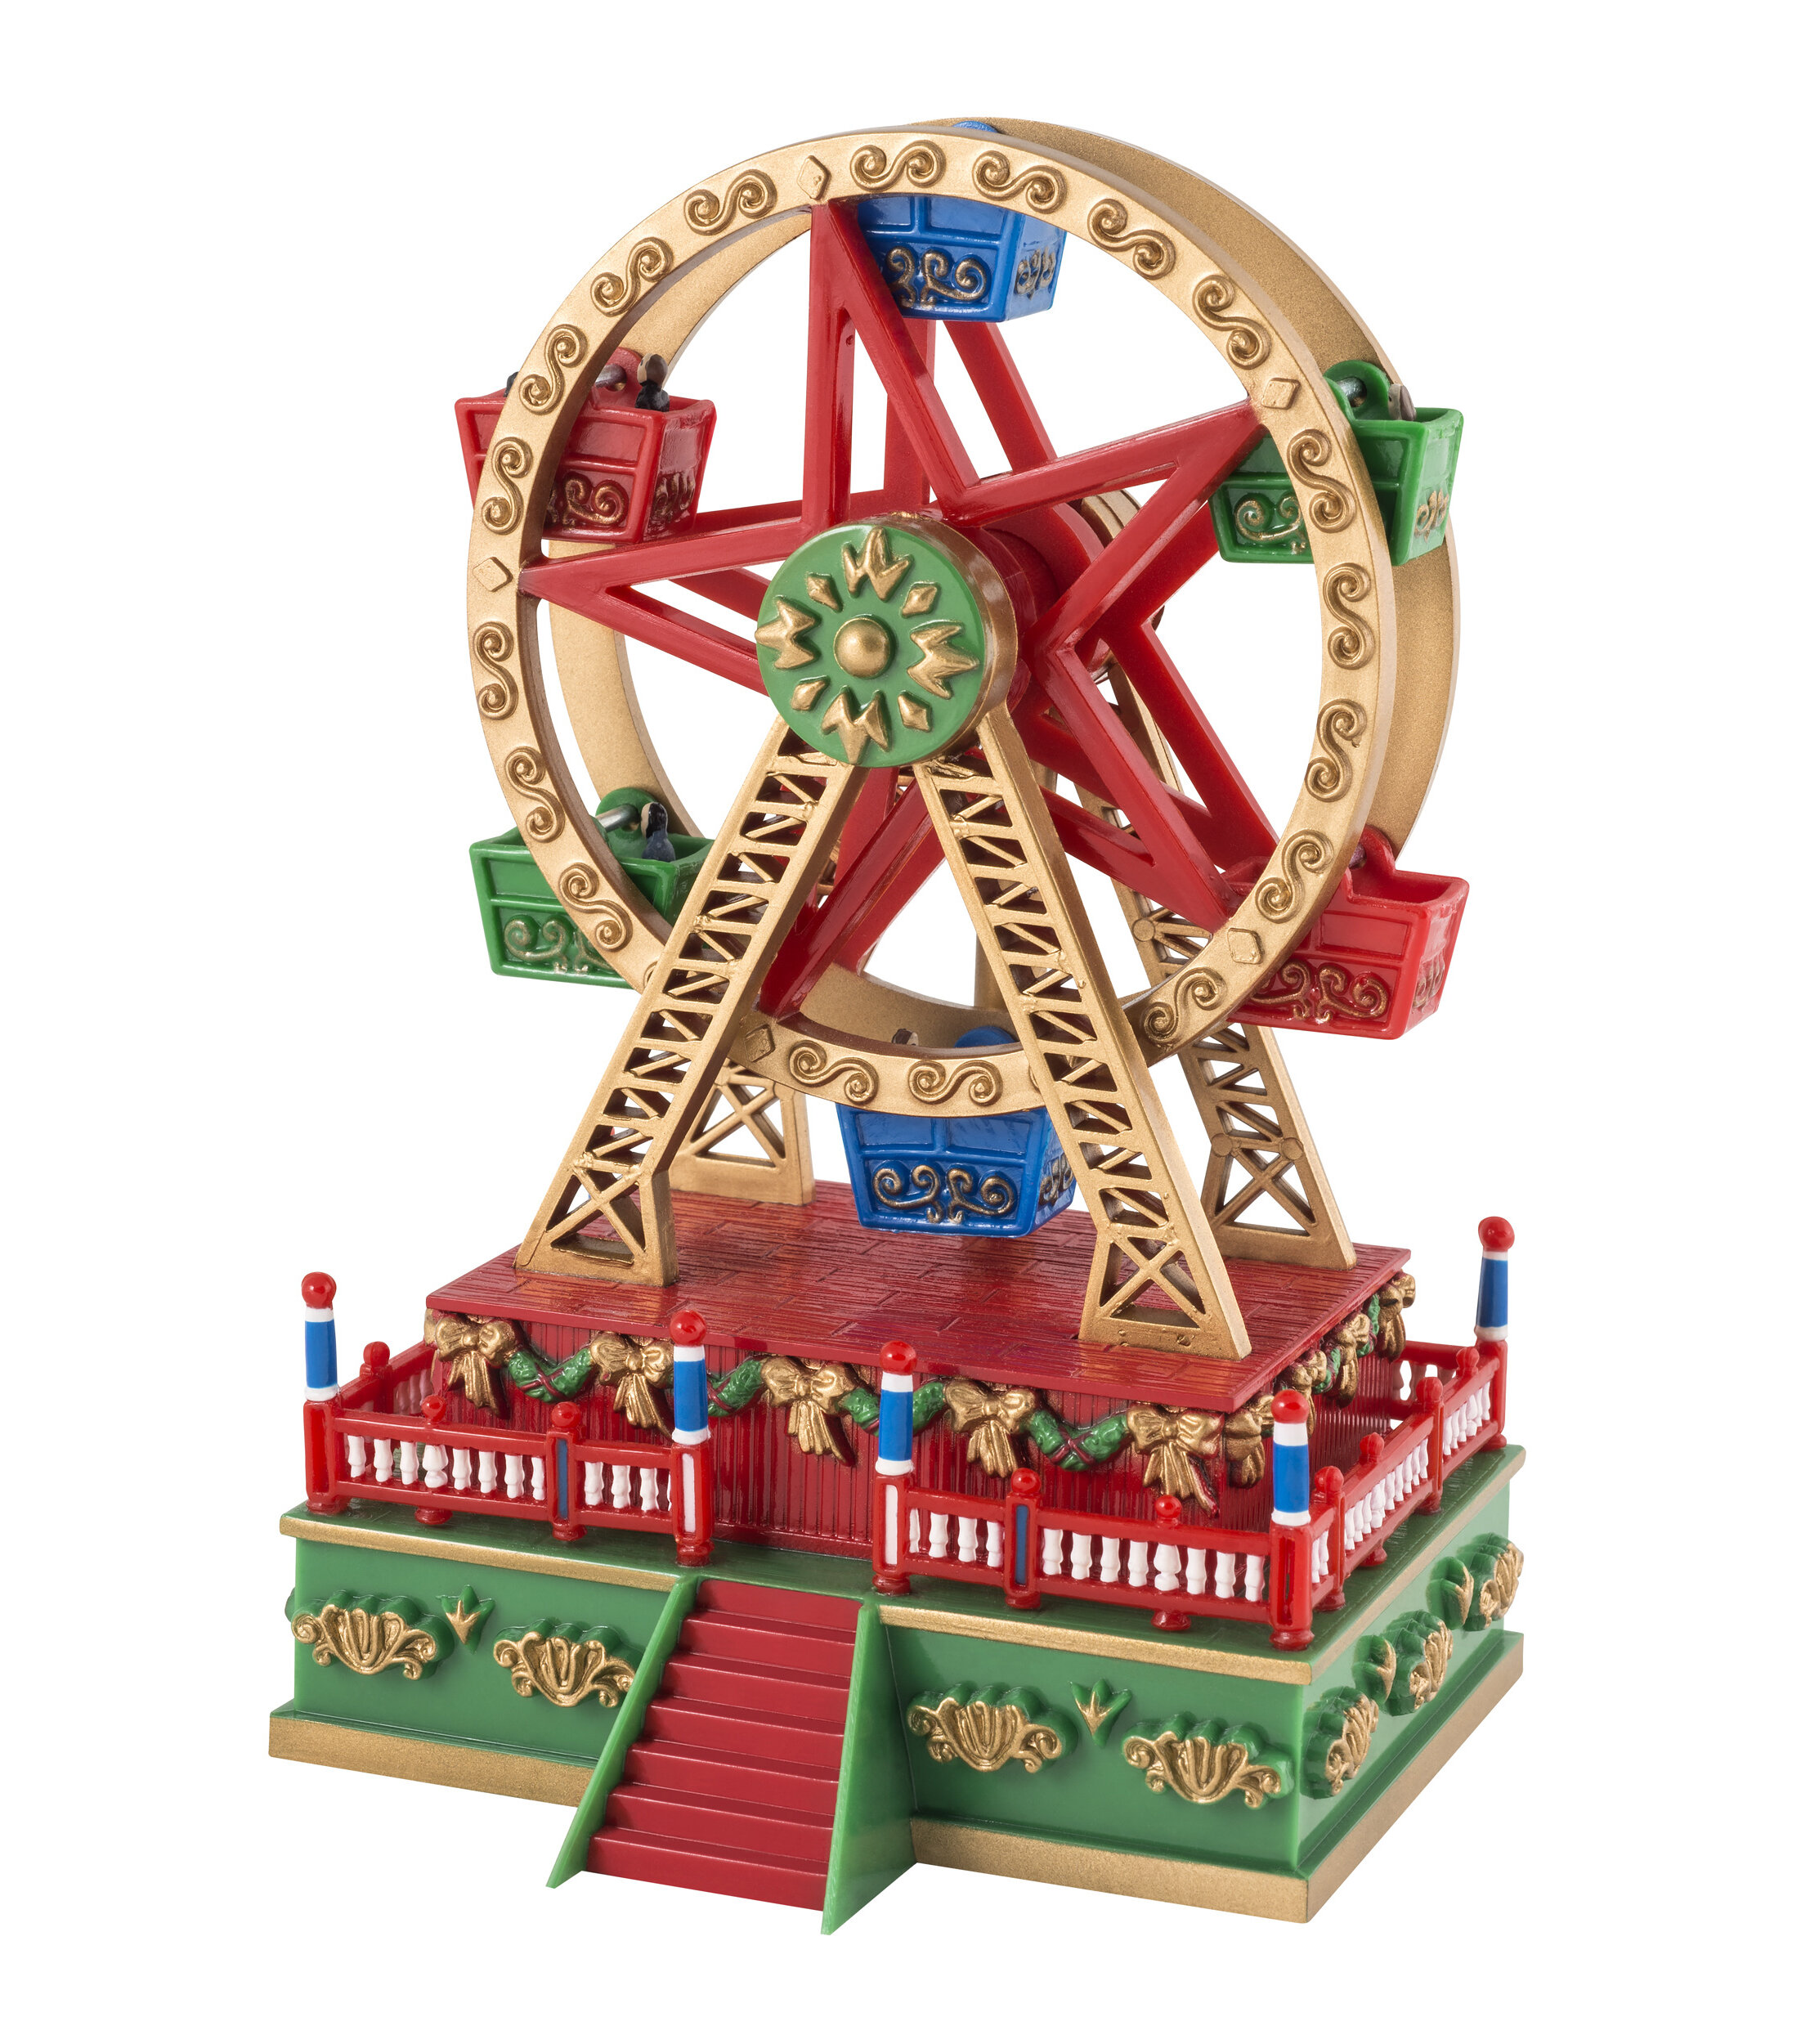 Illuminated Village Carnival Scene 6 Animated Ferris Wheel Animated Ferris Wheel and Carousel with Led Light Holiday Decoration Gifts Music 